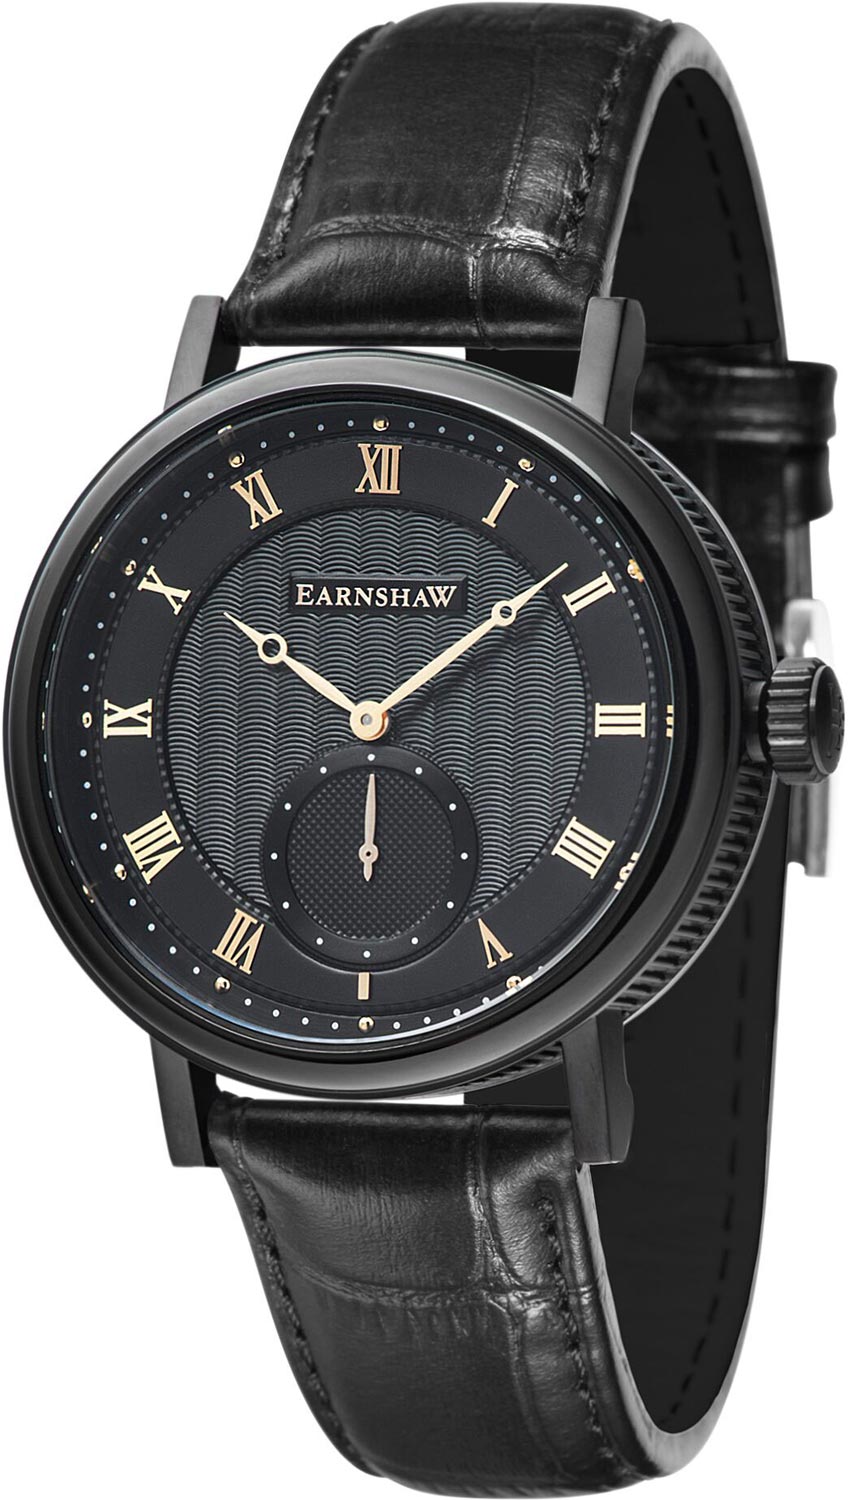   Earnshaw ES-8102-04